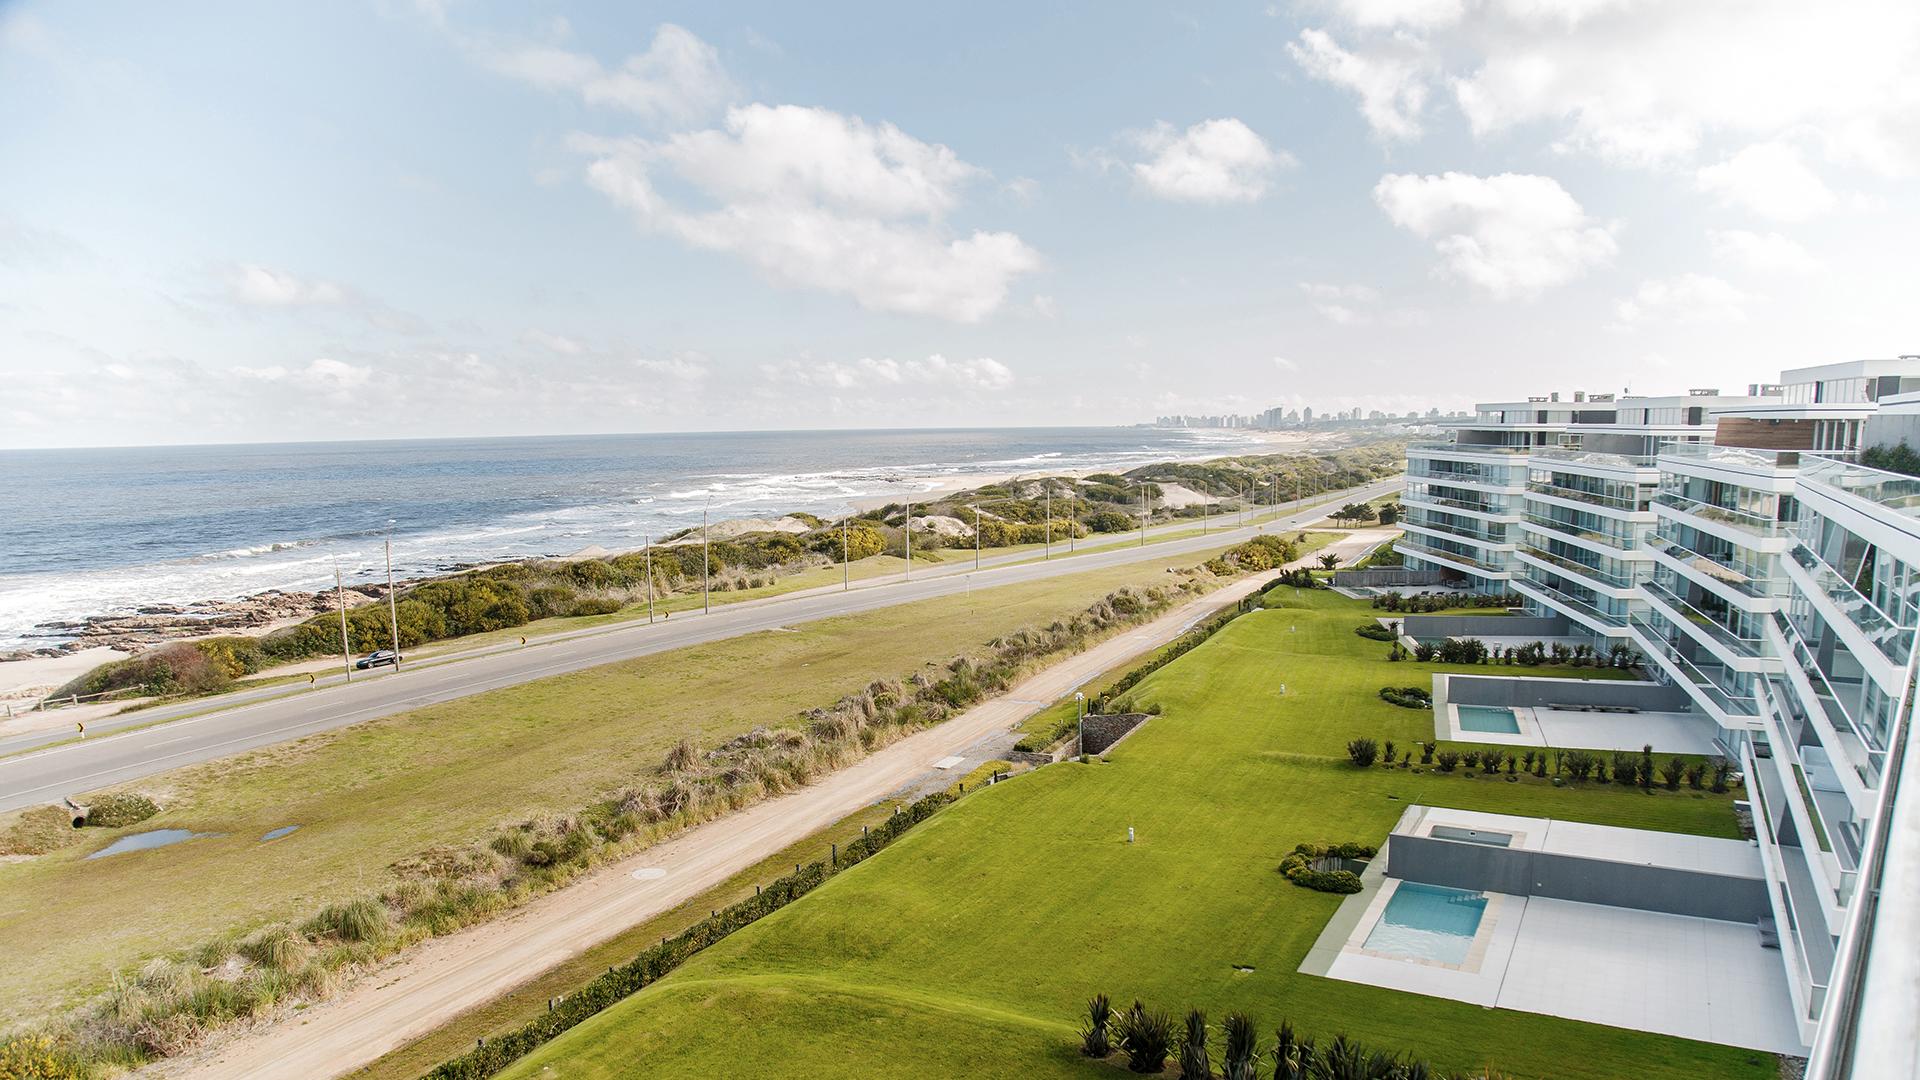 Luxury Two-Storey Penthouse located in Punta del Este, Punta del Este, Uruguay, listed by Curiocity Villas.